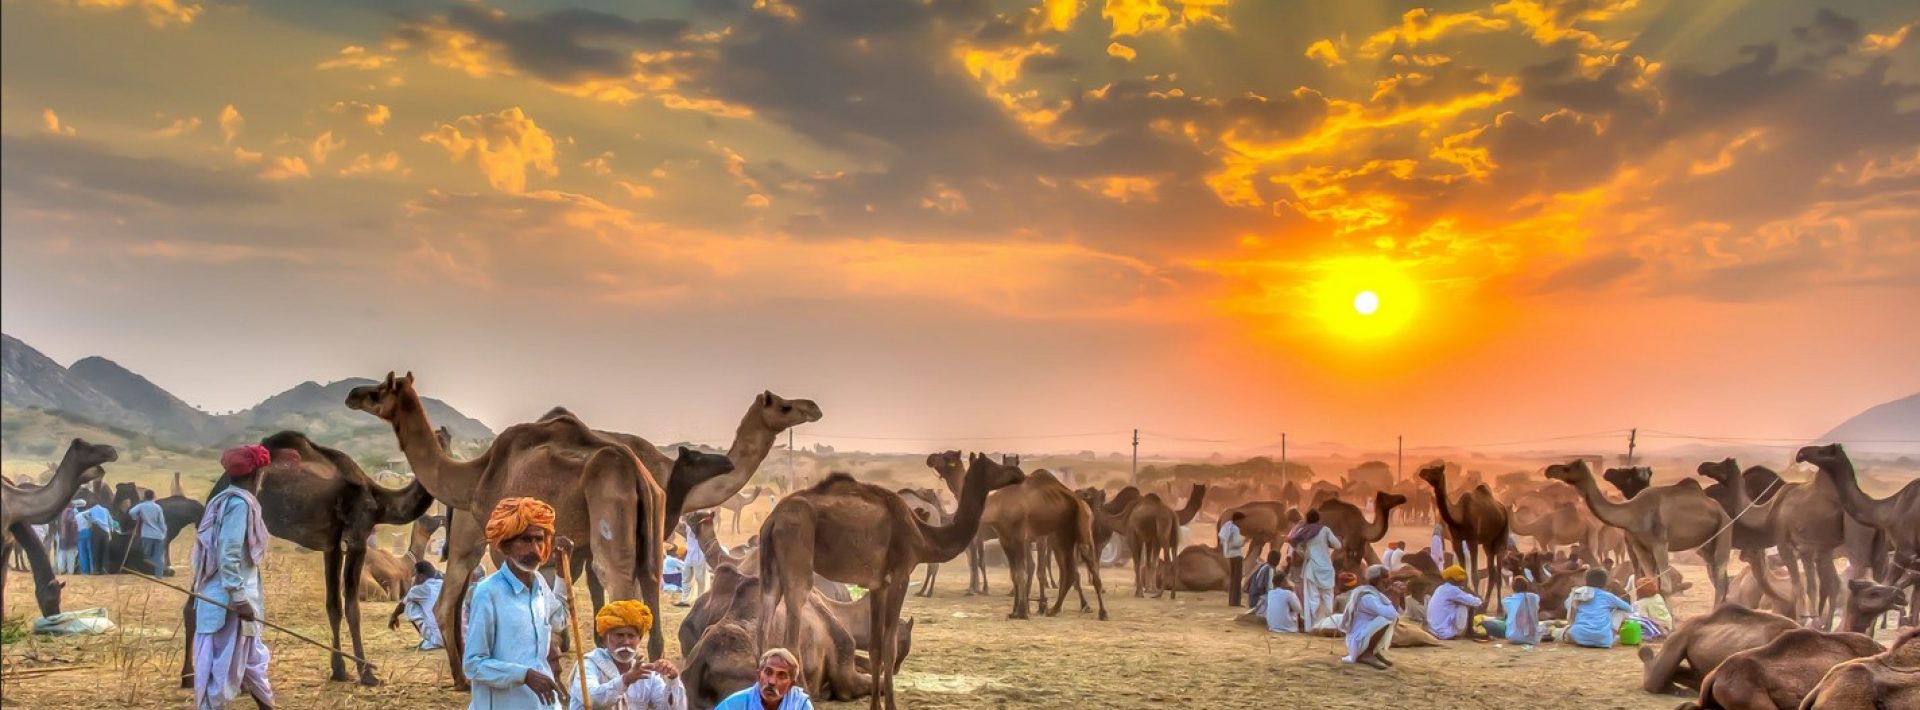 Pushkar-camel-fair